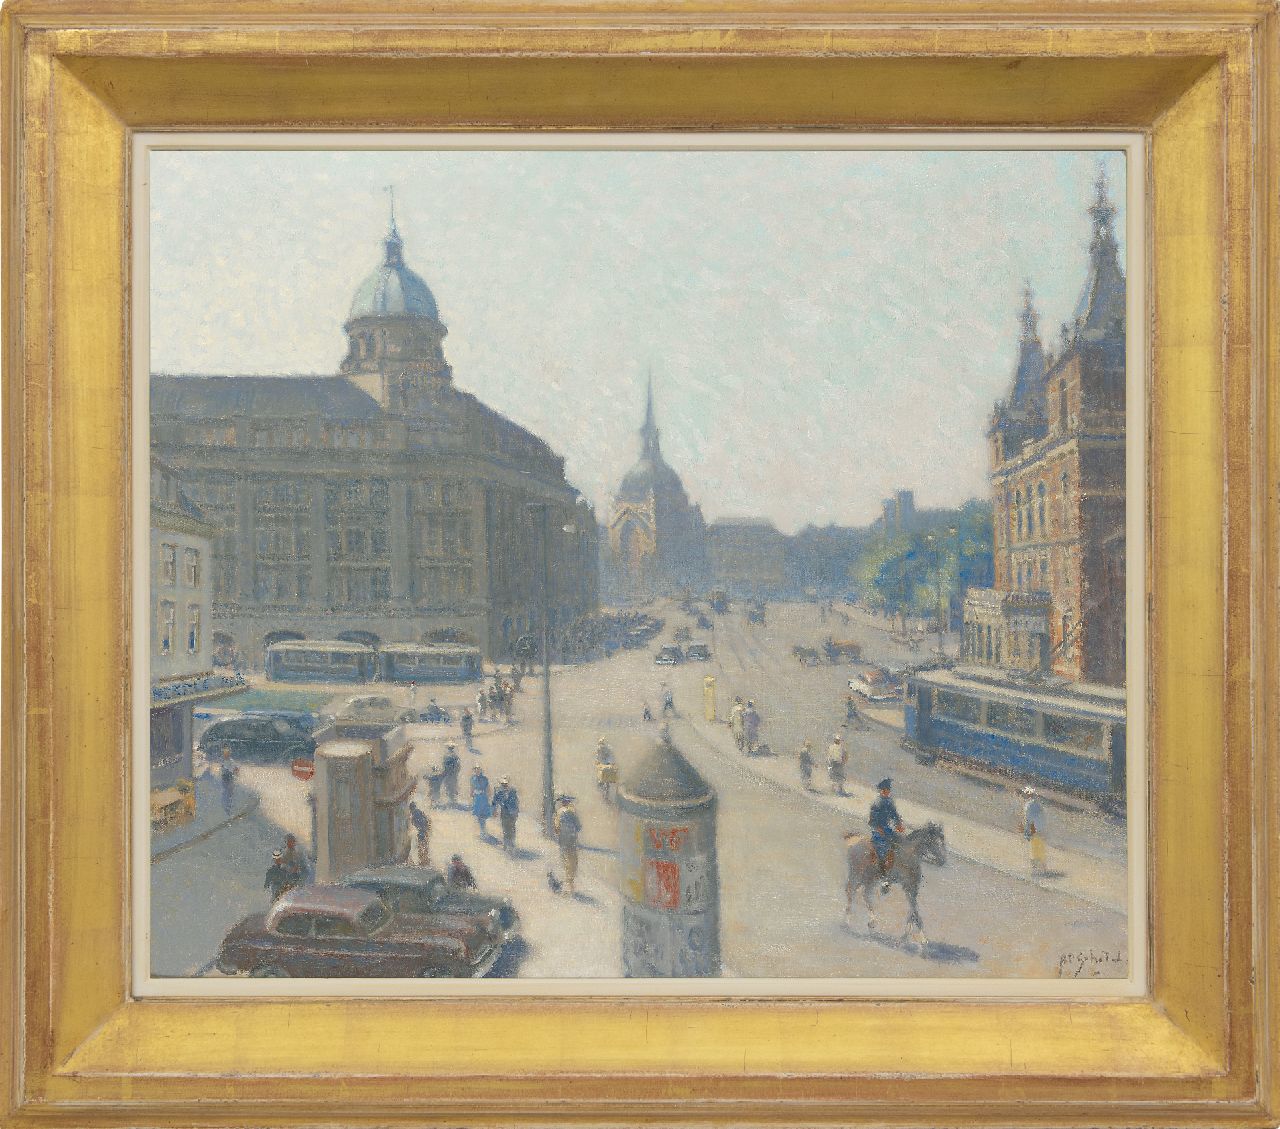 Schotel A.P.  | Anthonie Pieter Schotel | Schilderijen te koop aangeboden | Het Leidseplein, Amsterdam, gezien vanuit 'Extase', olieverf op doek 60,2 x 70,5 cm, gesigneerd rechtsonder